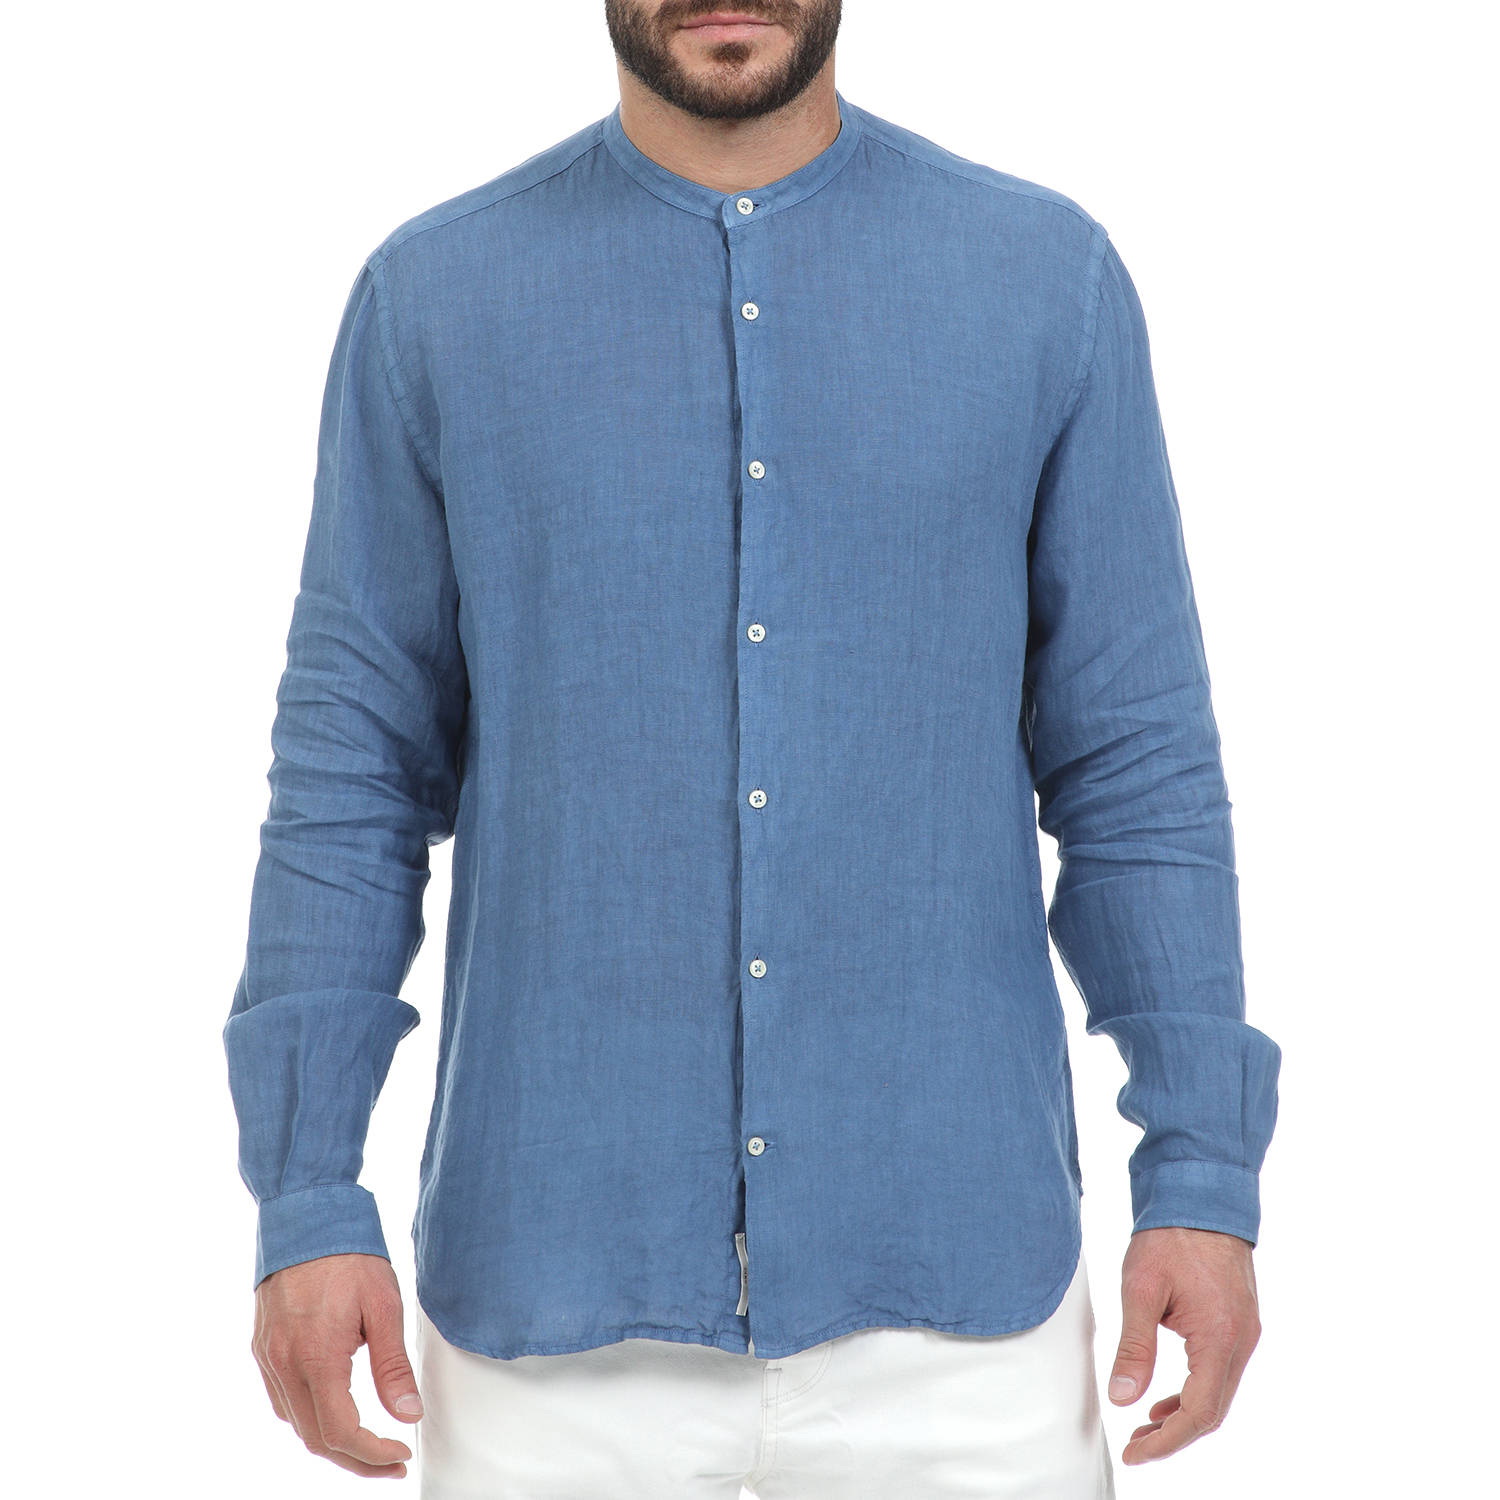 Ανδρικά/Ρούχα/Πουκάμισα/Μακρυμάνικα BROOKSFIELD - Ανδρικό λινό πουκάμισο BROOKSFIELD μπλε